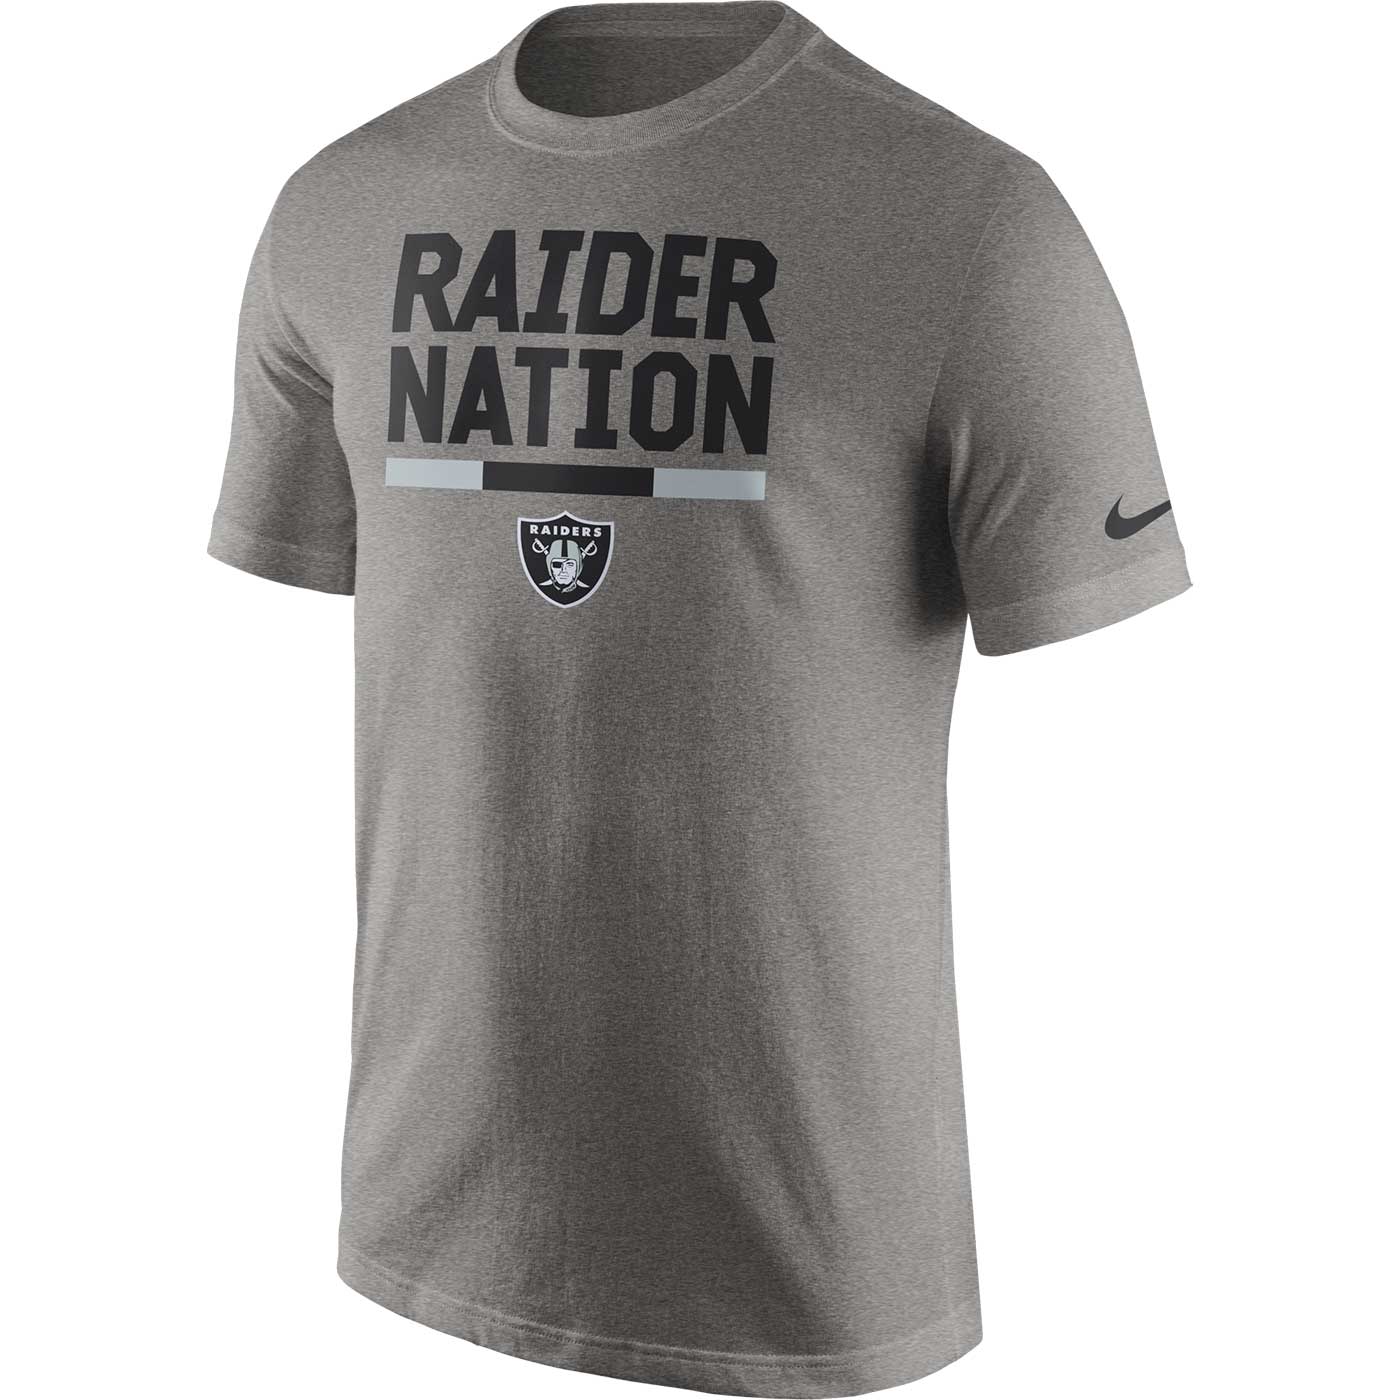 raider nation jerseys